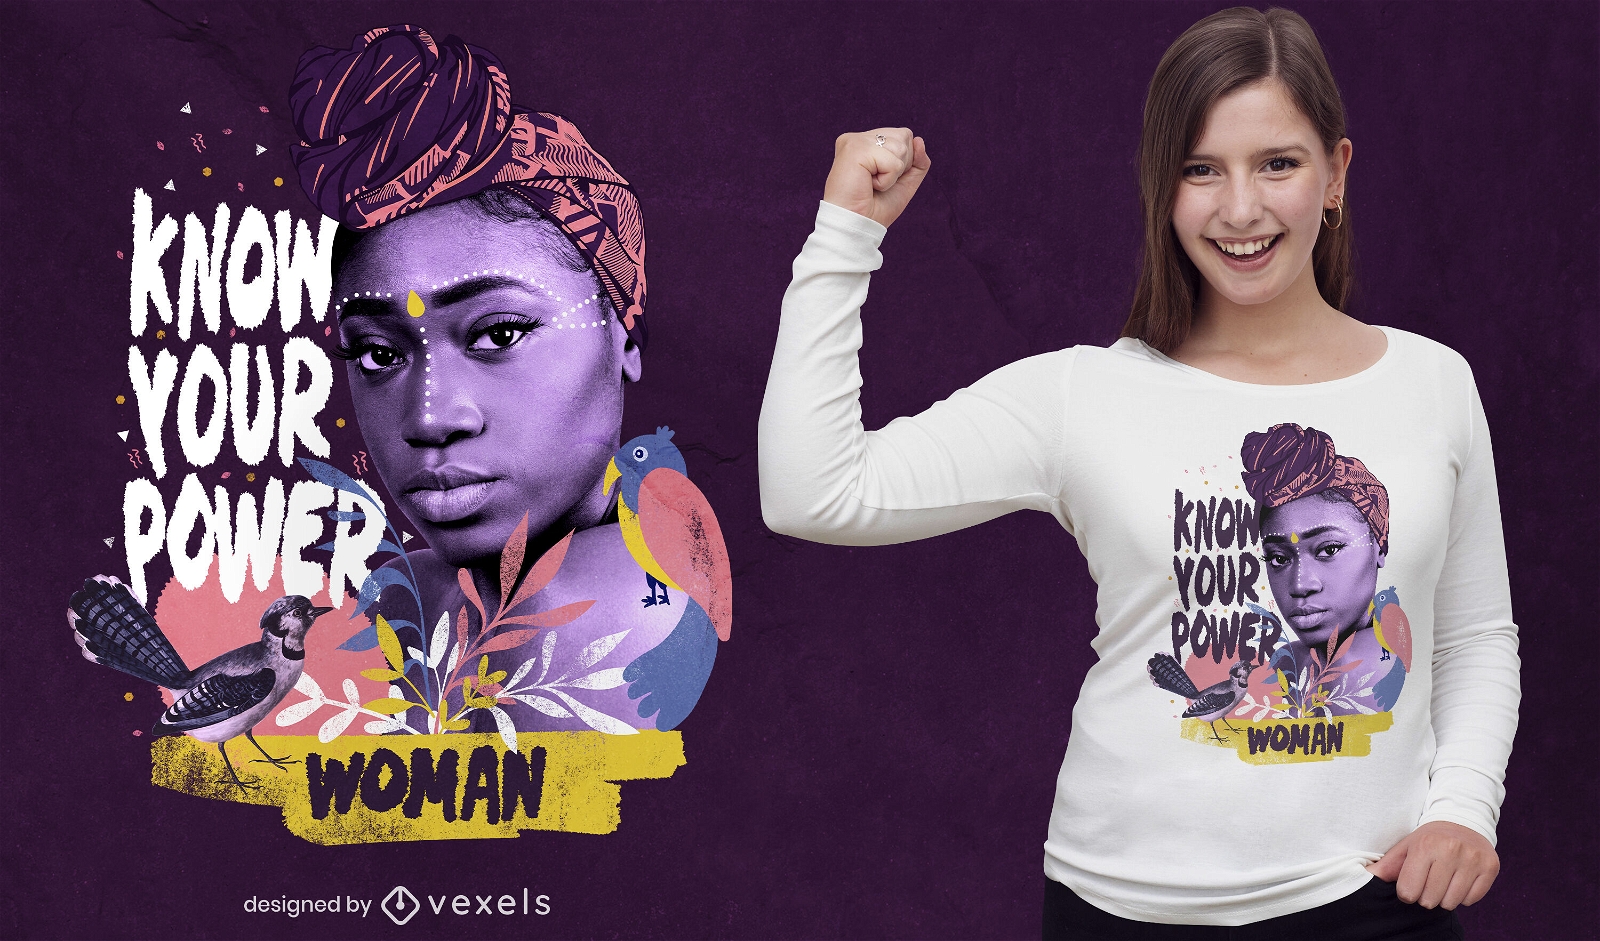 Women power photographic t-shirt psd